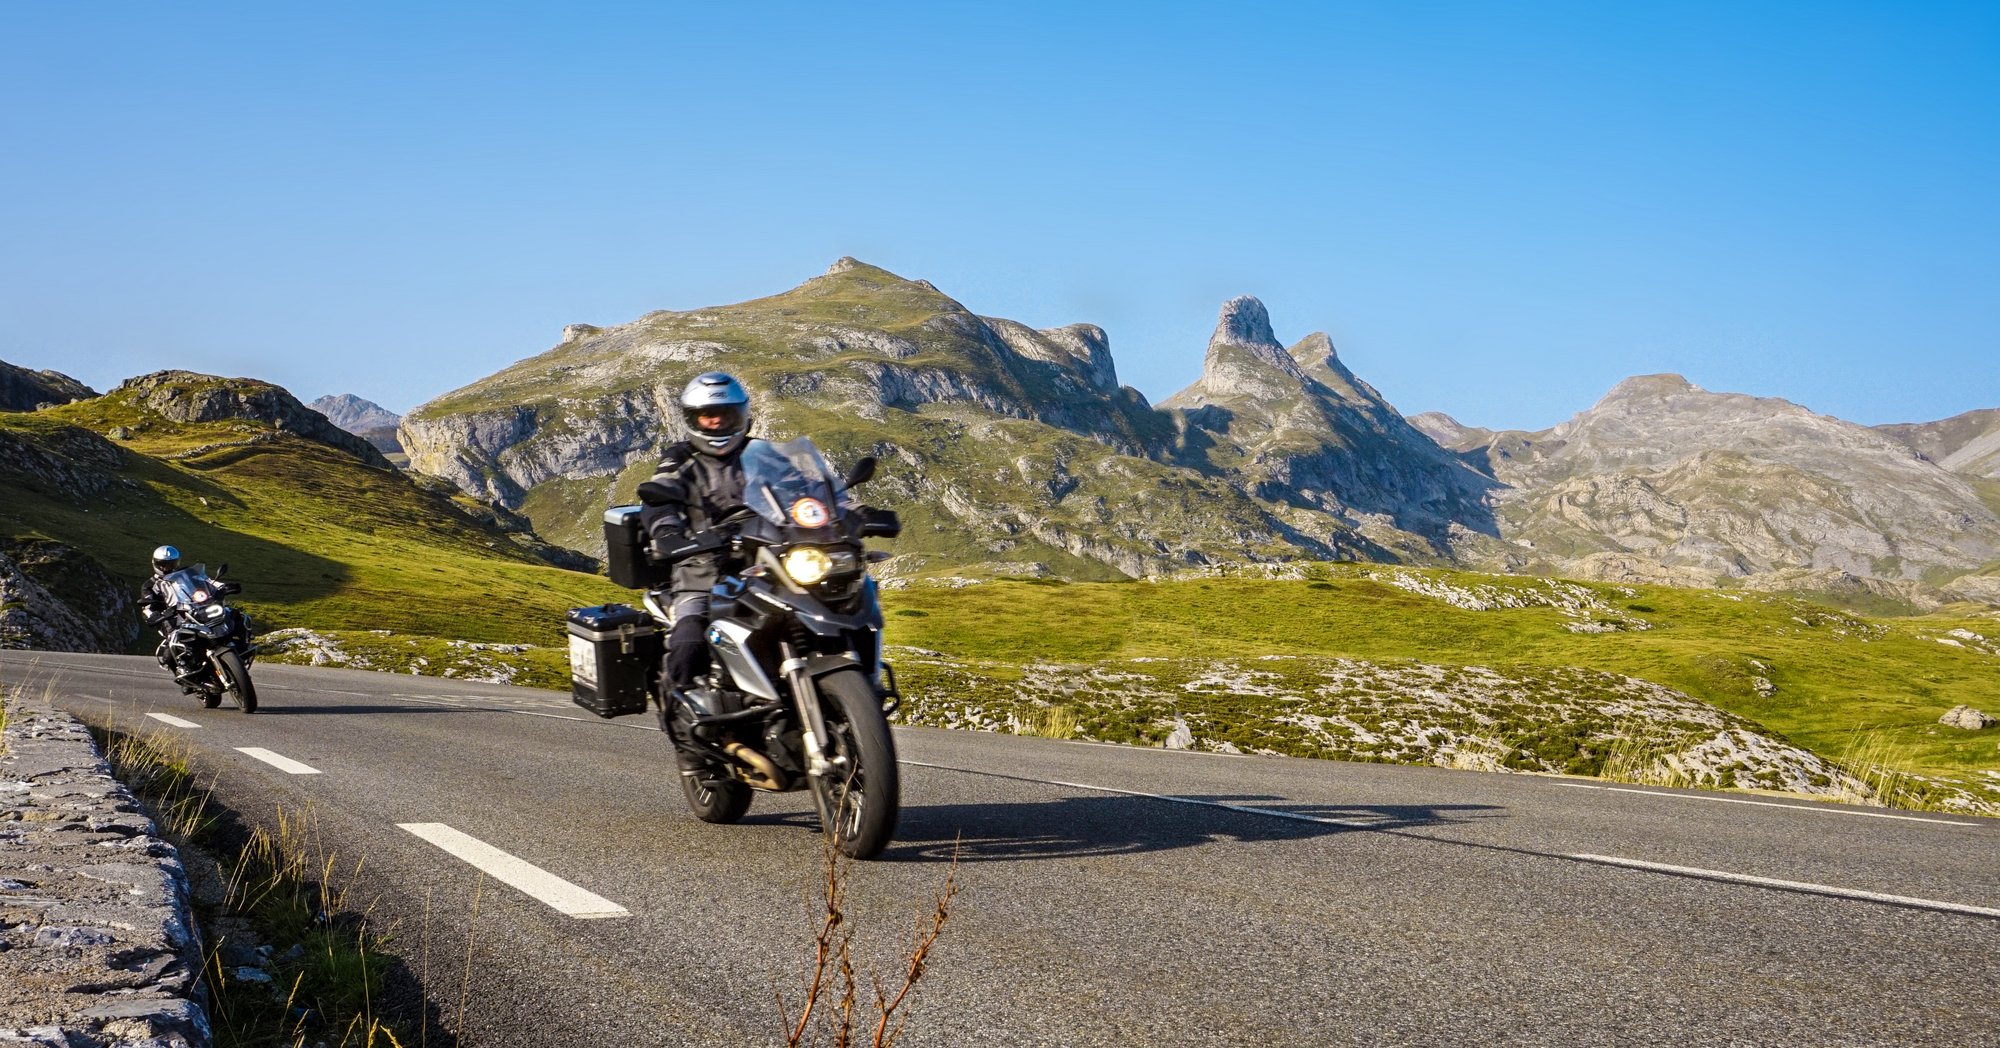 سفر با موتورسیکلت ؛ راهنمای جامع سفر با موتورسیکلت